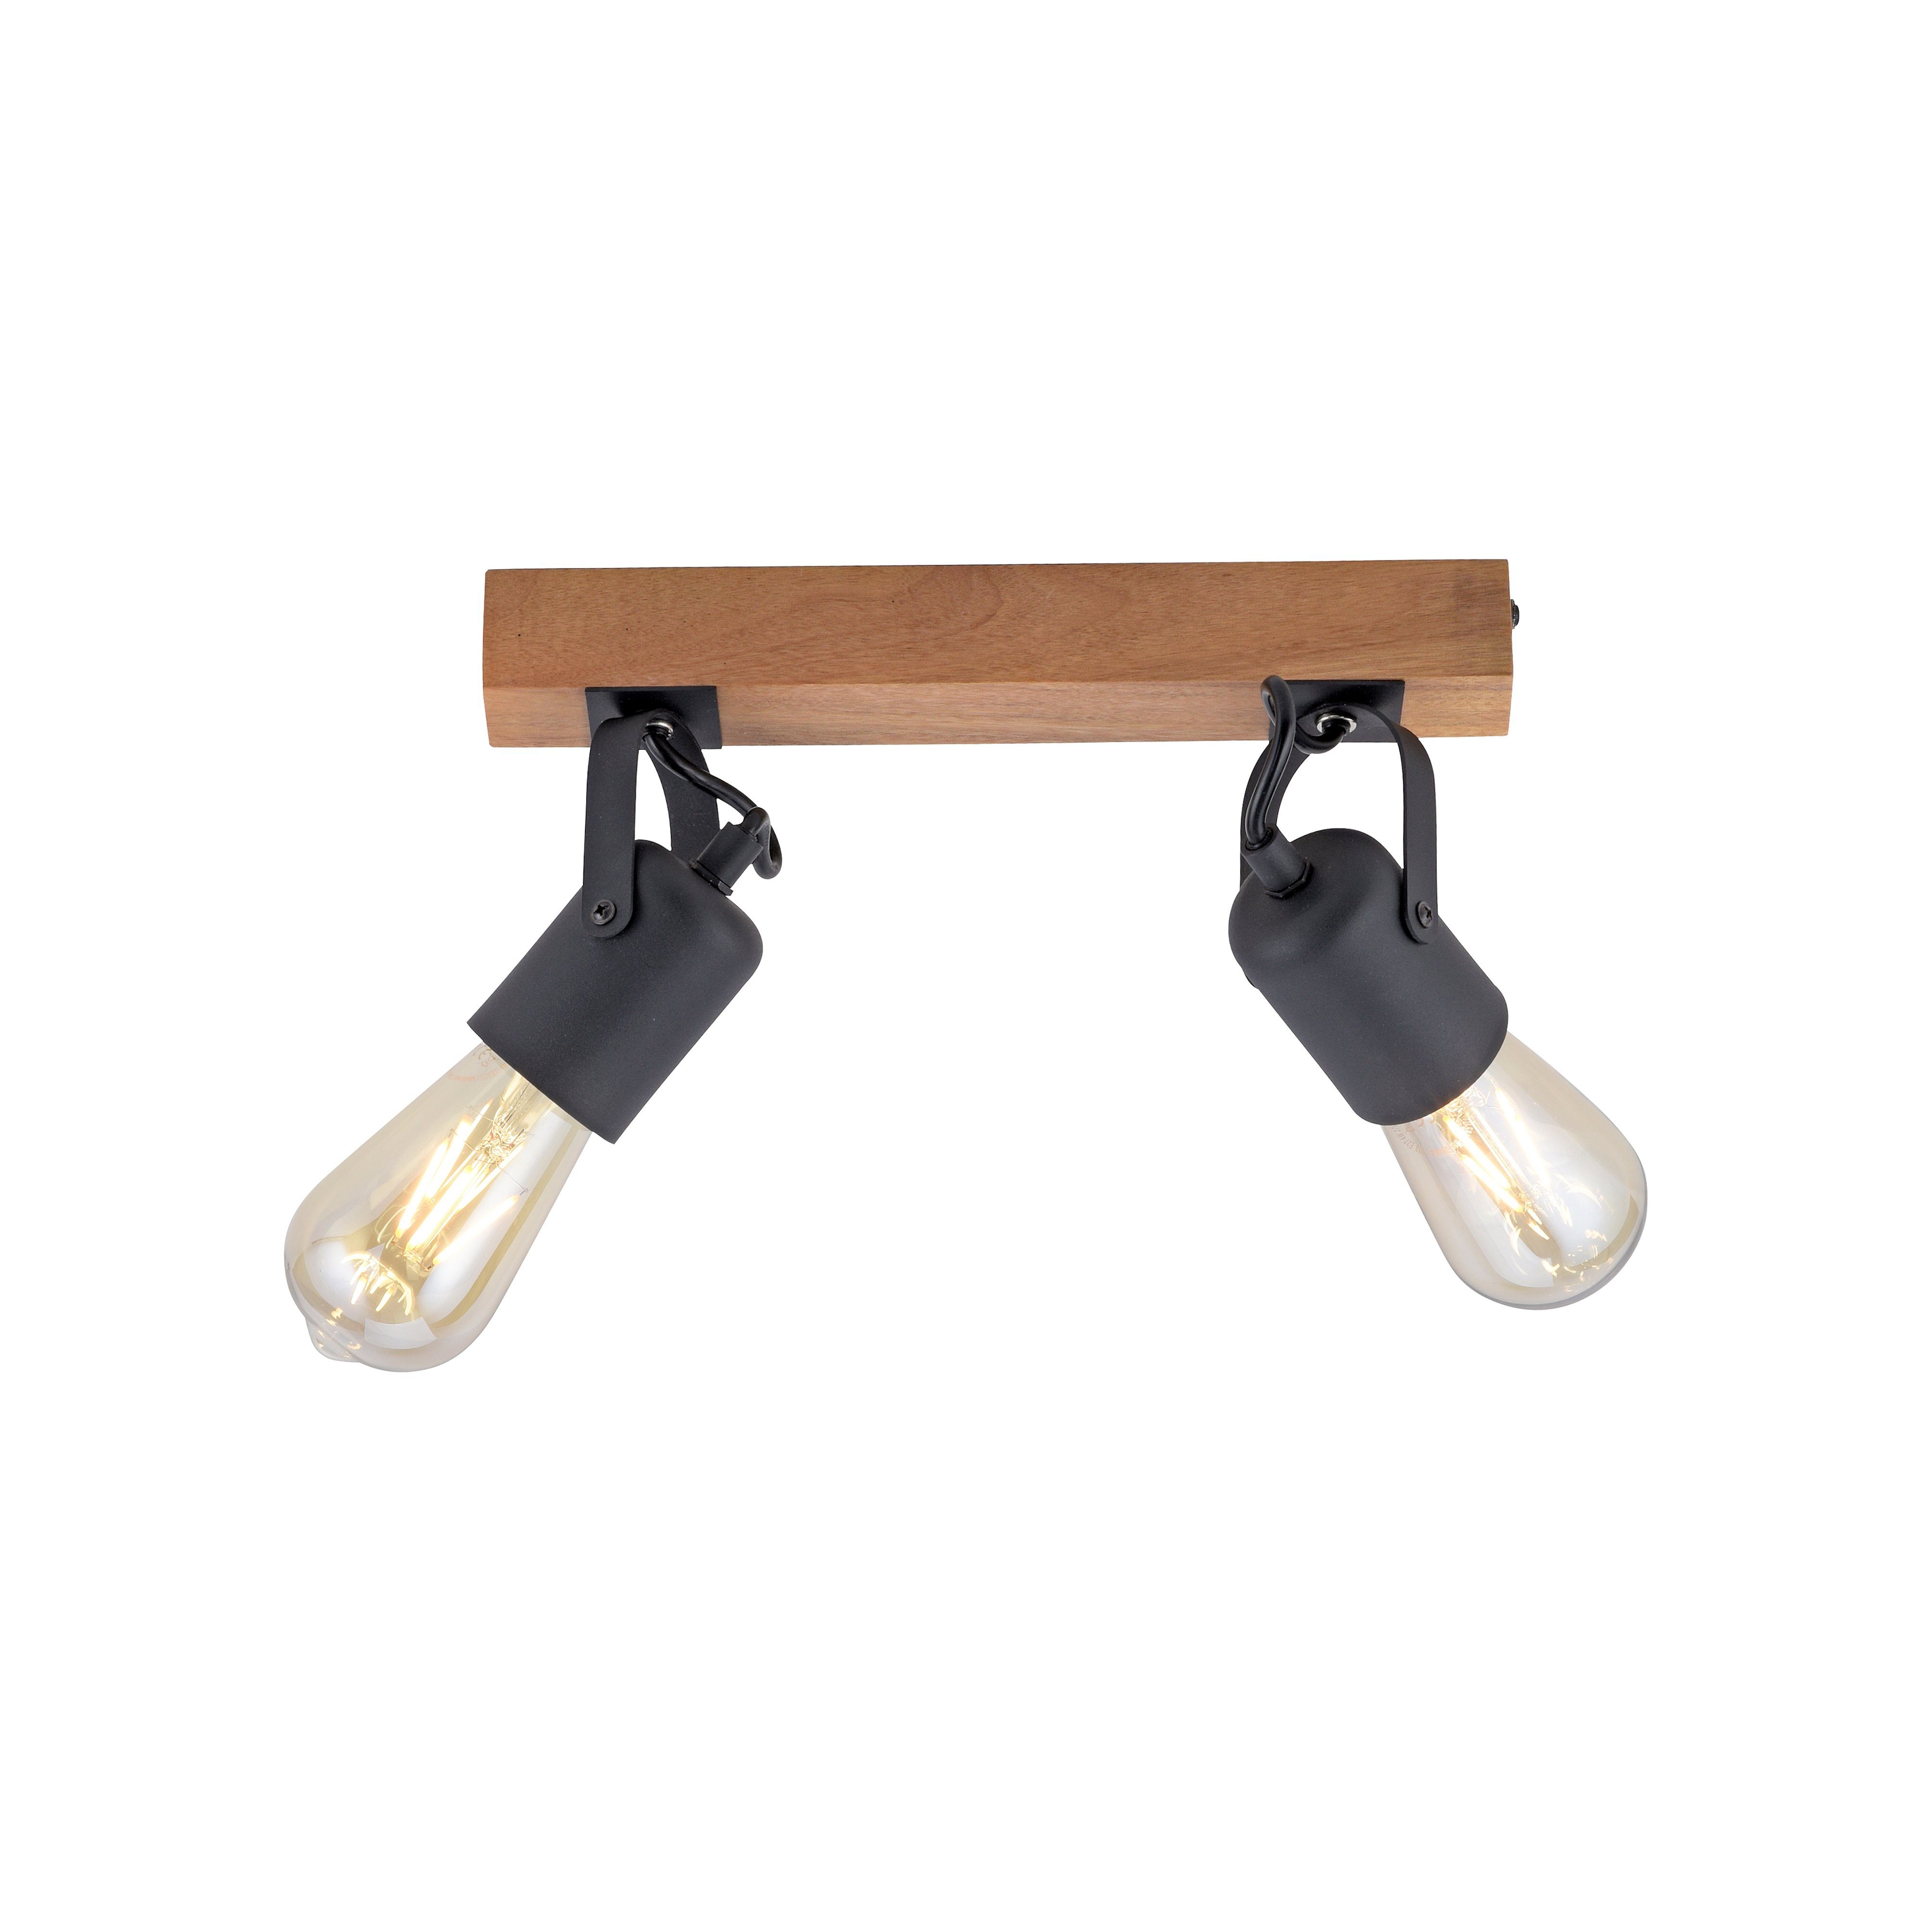 JUST LIGHT Wandleuchte CANOP, ohne Leuchtmittel, ExklusiveE27, Moderne  Wand- und Deckenlampe im Industrial Style